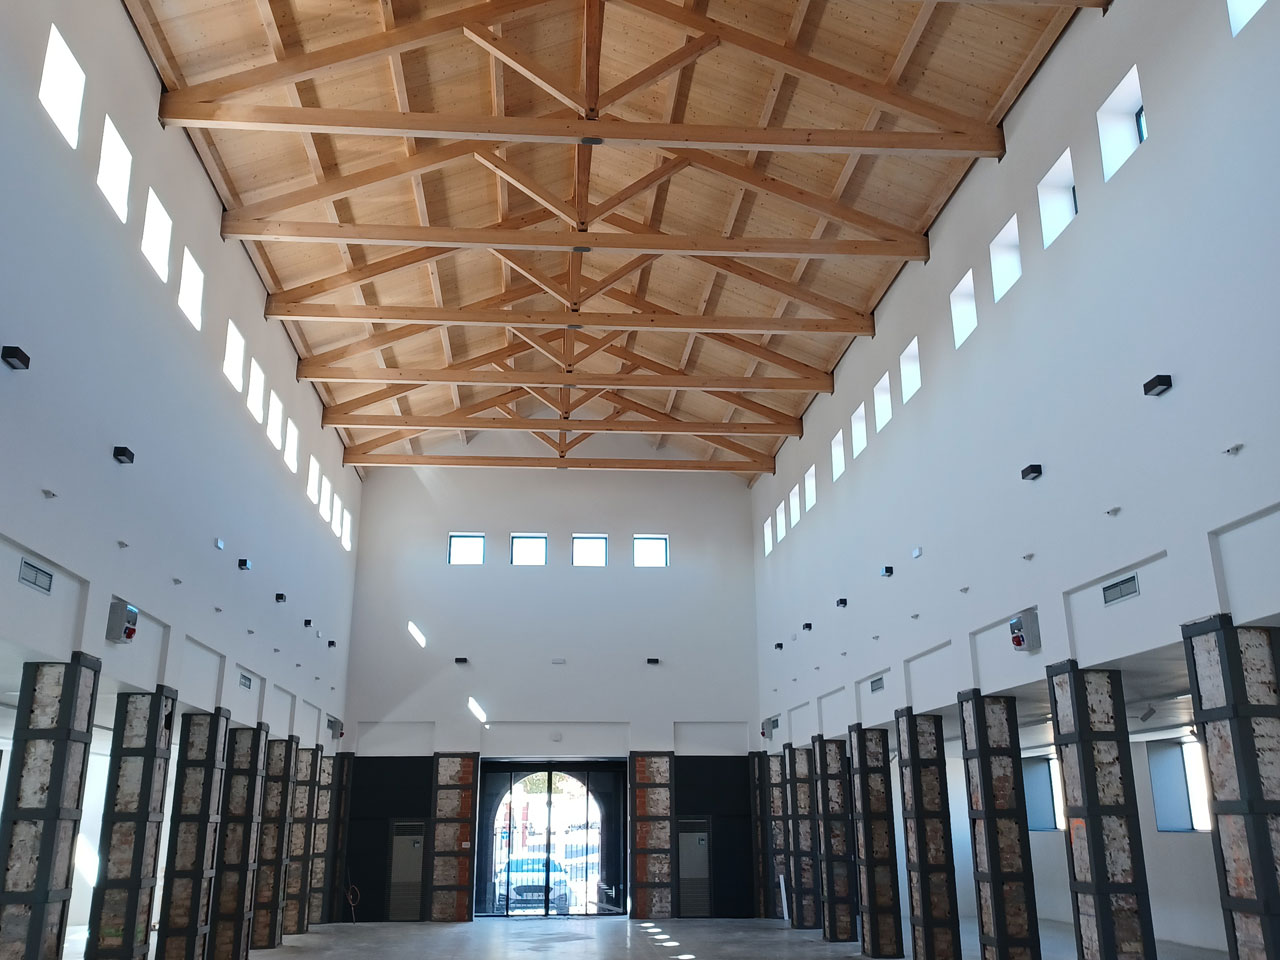 Orthem recupera uno de los edificios más emblemáticos de Tarancón, en Cuenca